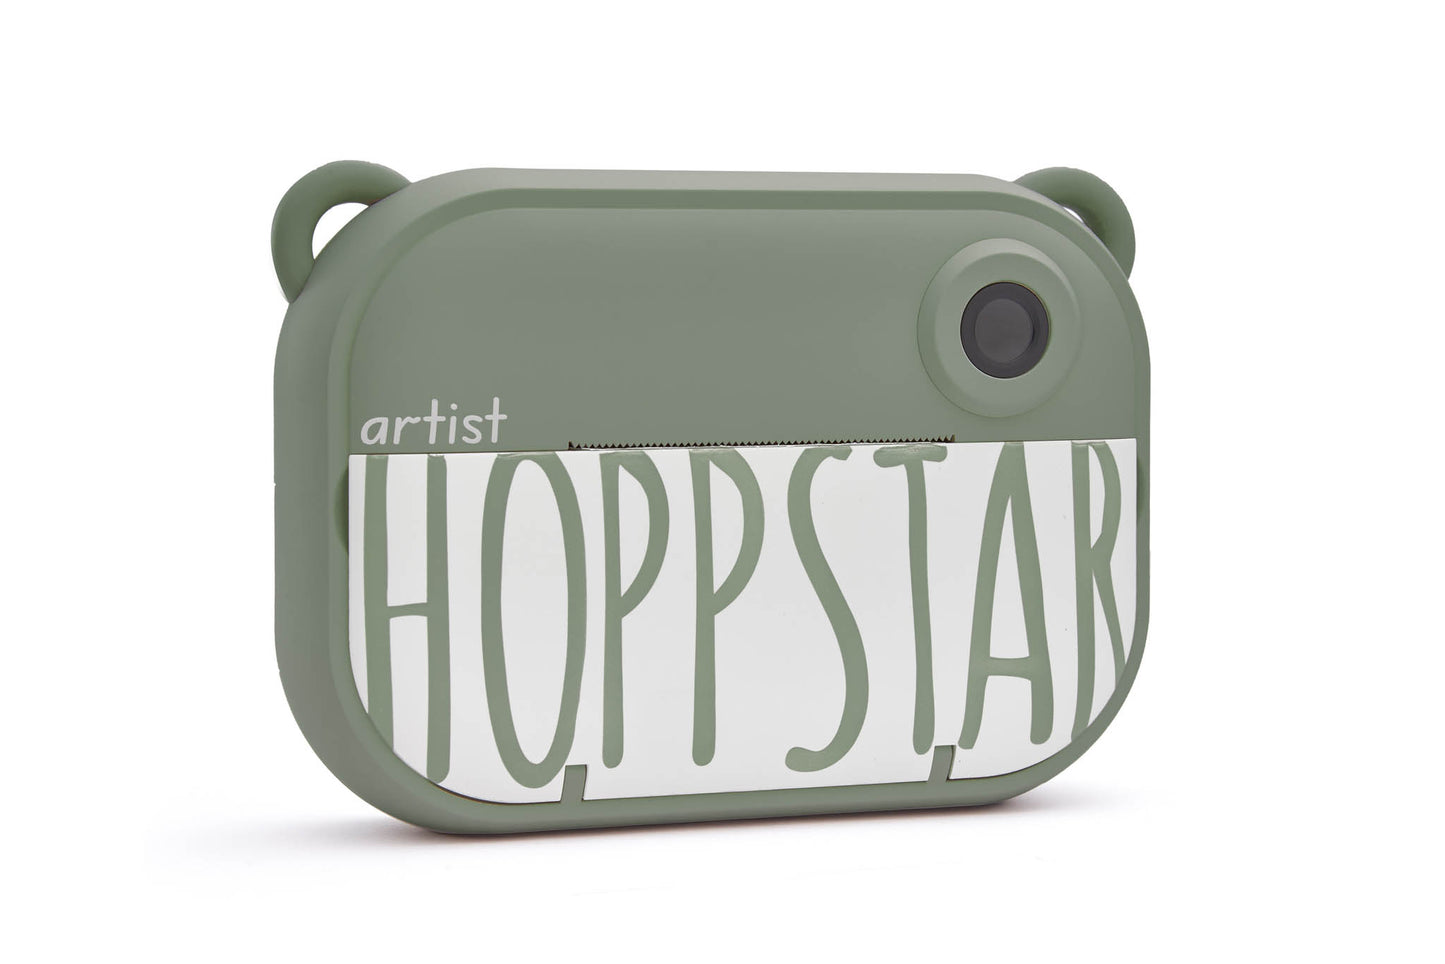 Hoppstar - Kinder Digitalkamera mit Sofortdruckfunktion "Artist" | laurel